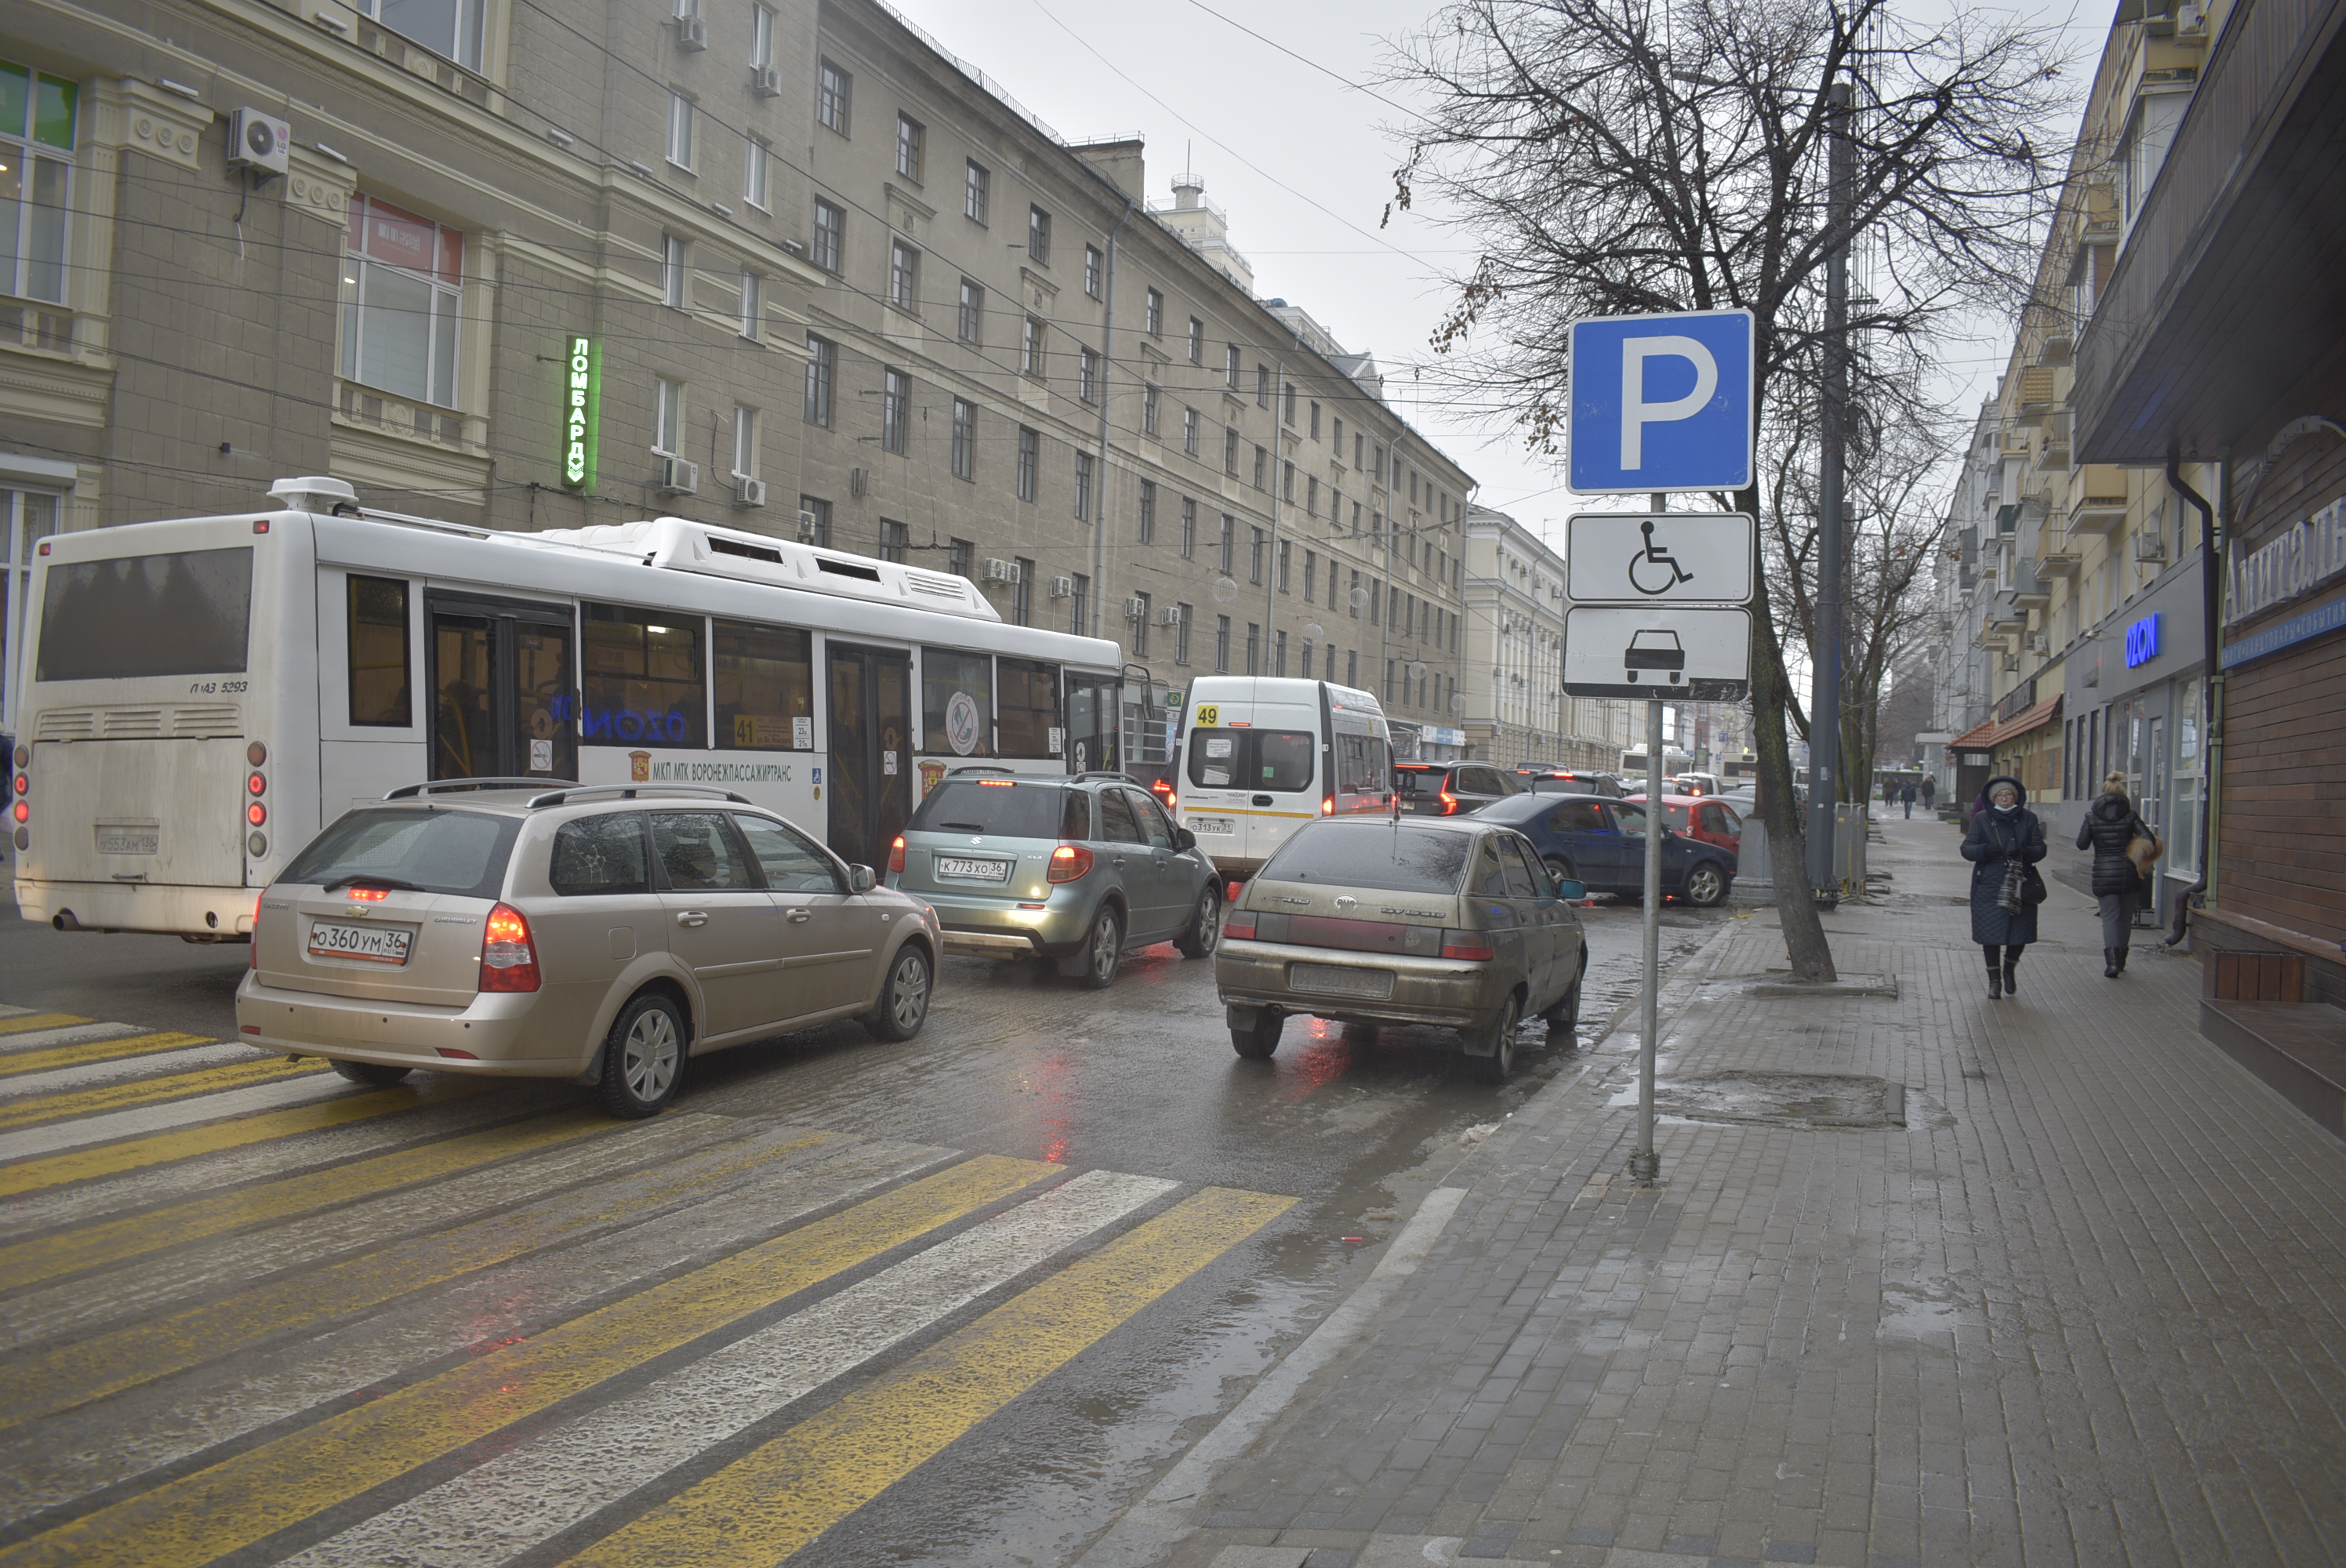 Какими методами можно решить проблему с парковками в Воронеже? - фото 9